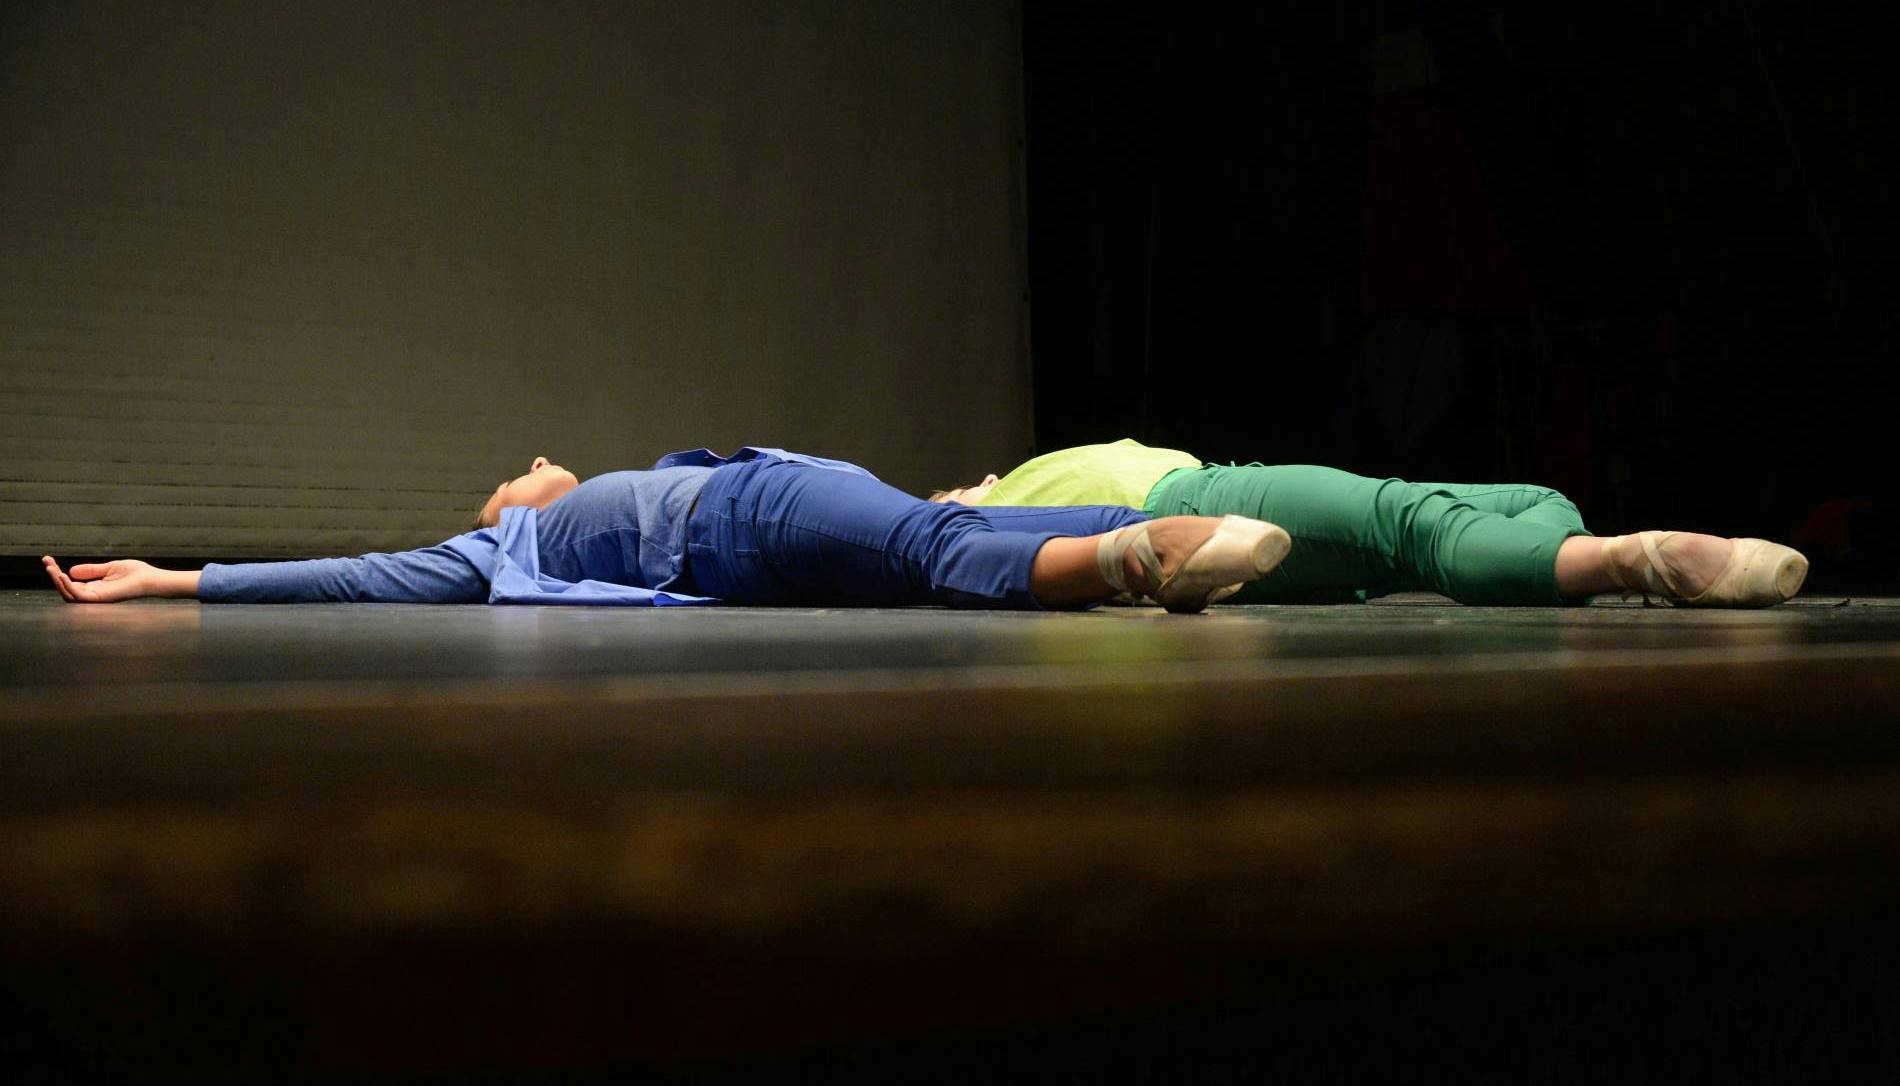 Due danzatrici sono sdraiate a terra sul palo, parallele tra loro. Una è vestita in blu, l'altra in verde. Ai piedi, rivolti verso la platea, indossano scarpe da punta.